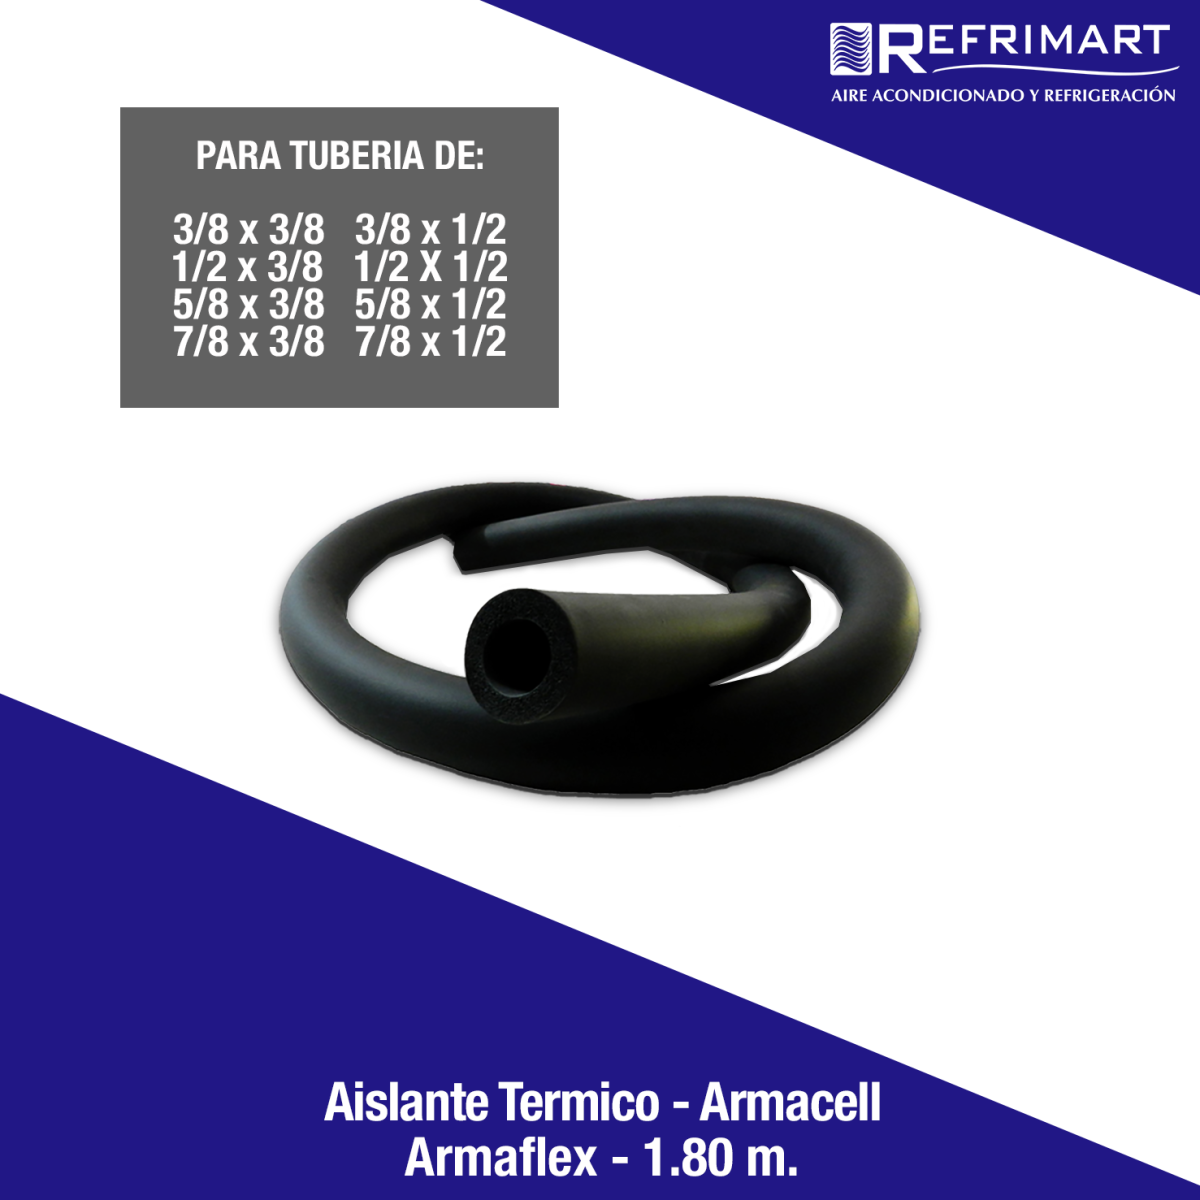 siglo Berri Hierbas Aislante Térmico Armaflex - Armacell 1.8 M. - Refrimart de México S.A de  C.V. - Aire Acondicionado y Refrigeración